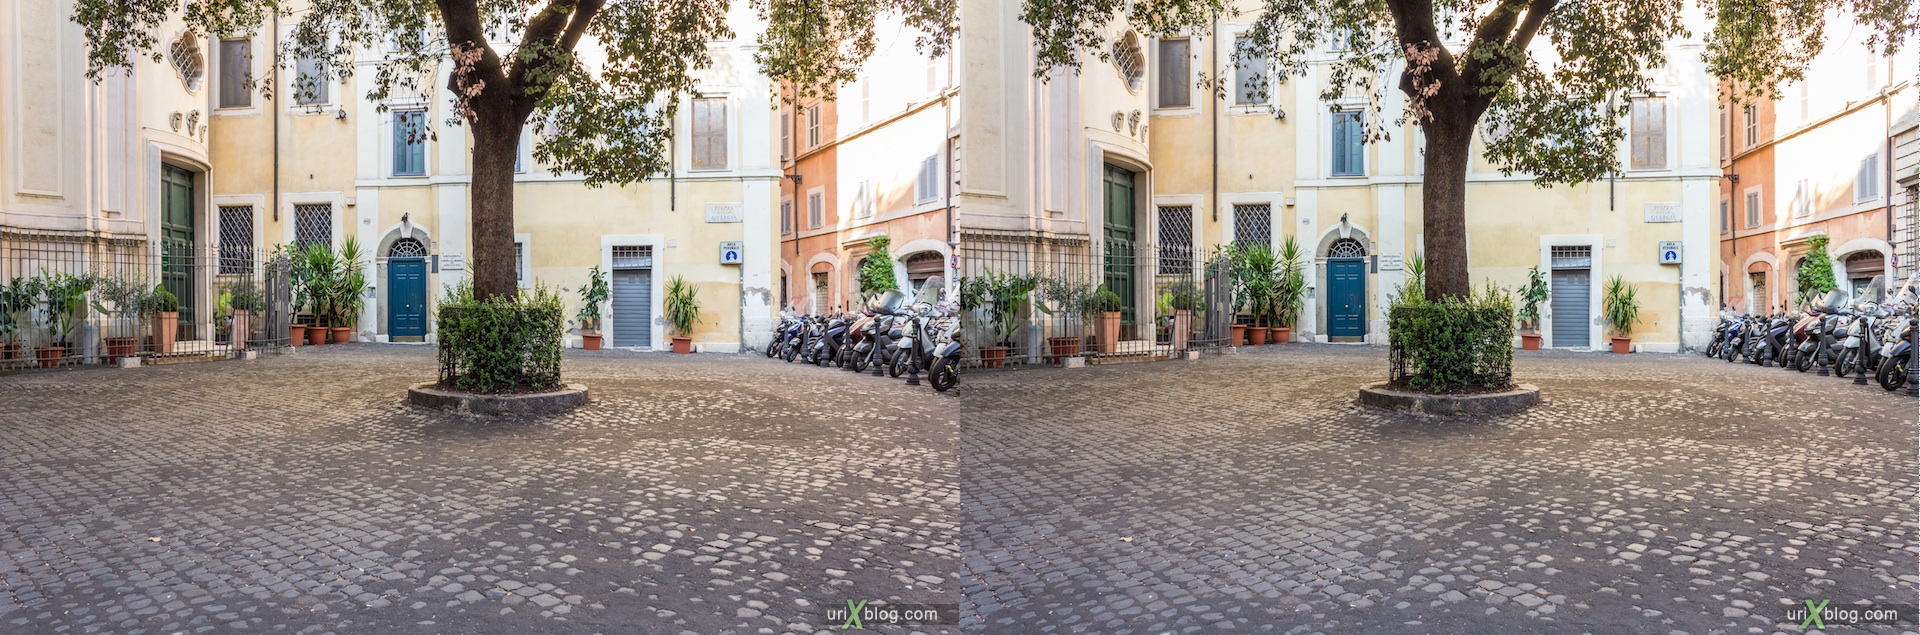 2012, площадь Piazza della Quercia, Рим, Италия, осень, 3D, перекрёстные стереопары, стерео, стереопара, стереопары